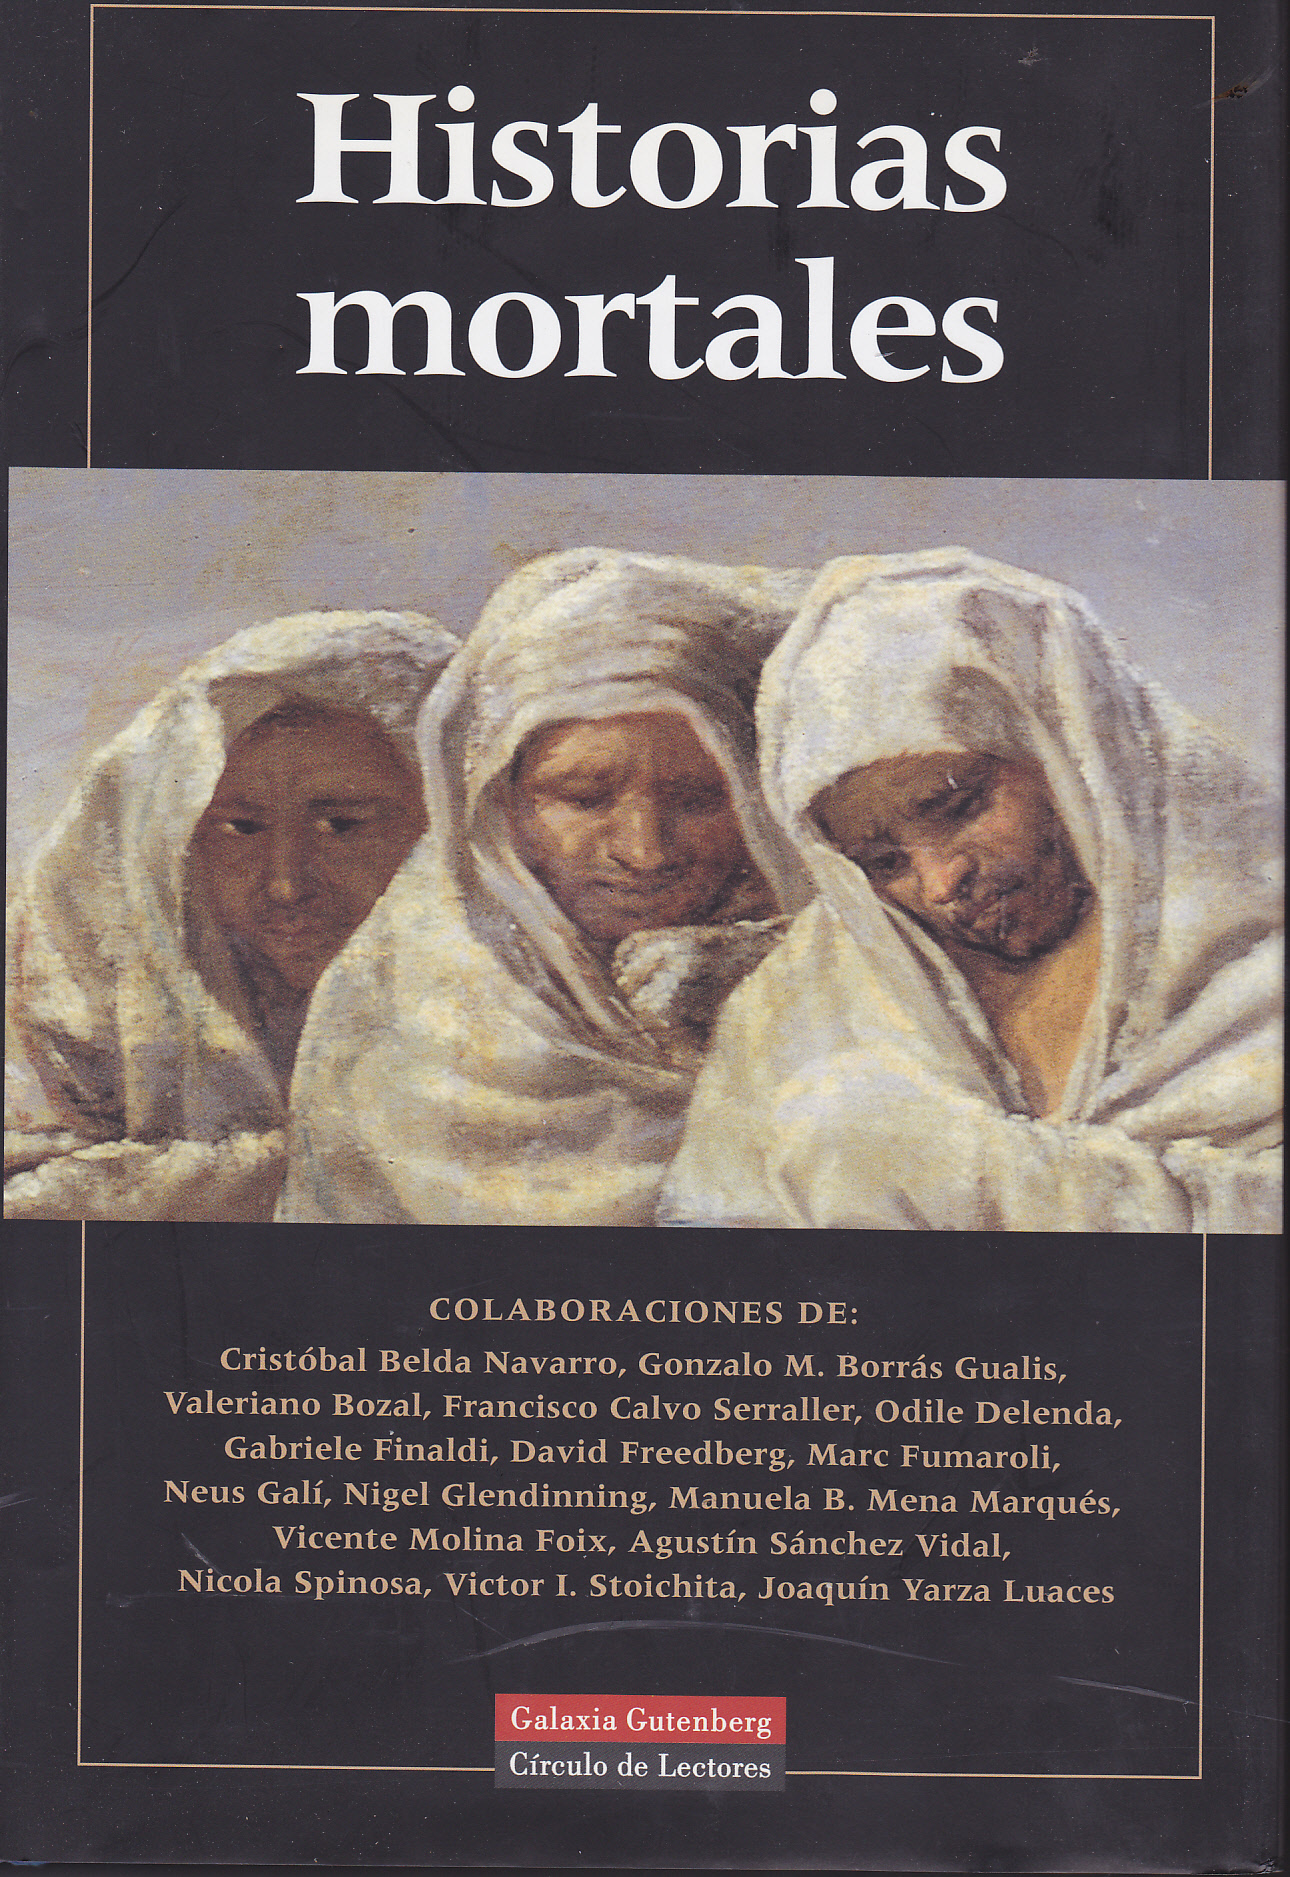 Imagen de portada del libro Historias mortales